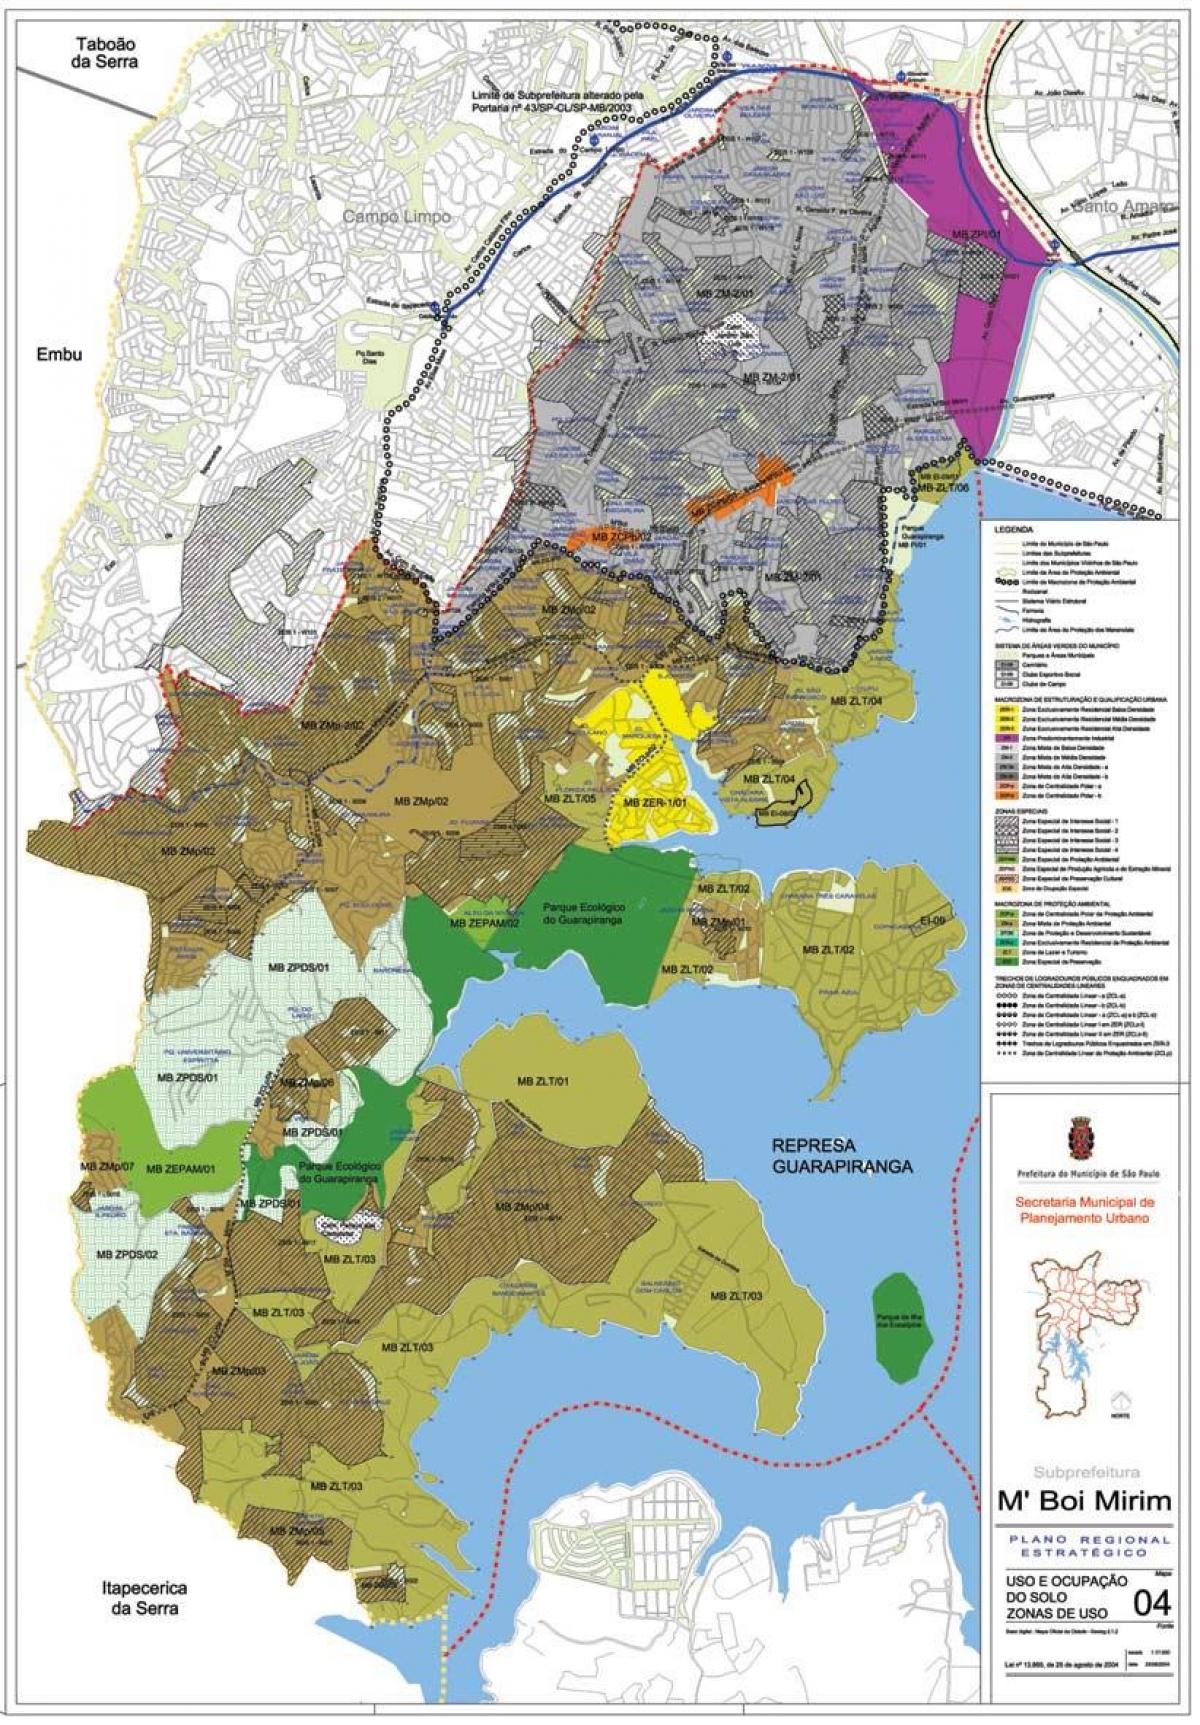 Mapa do M Boi Mirim São Paulo - Ocupação do solo